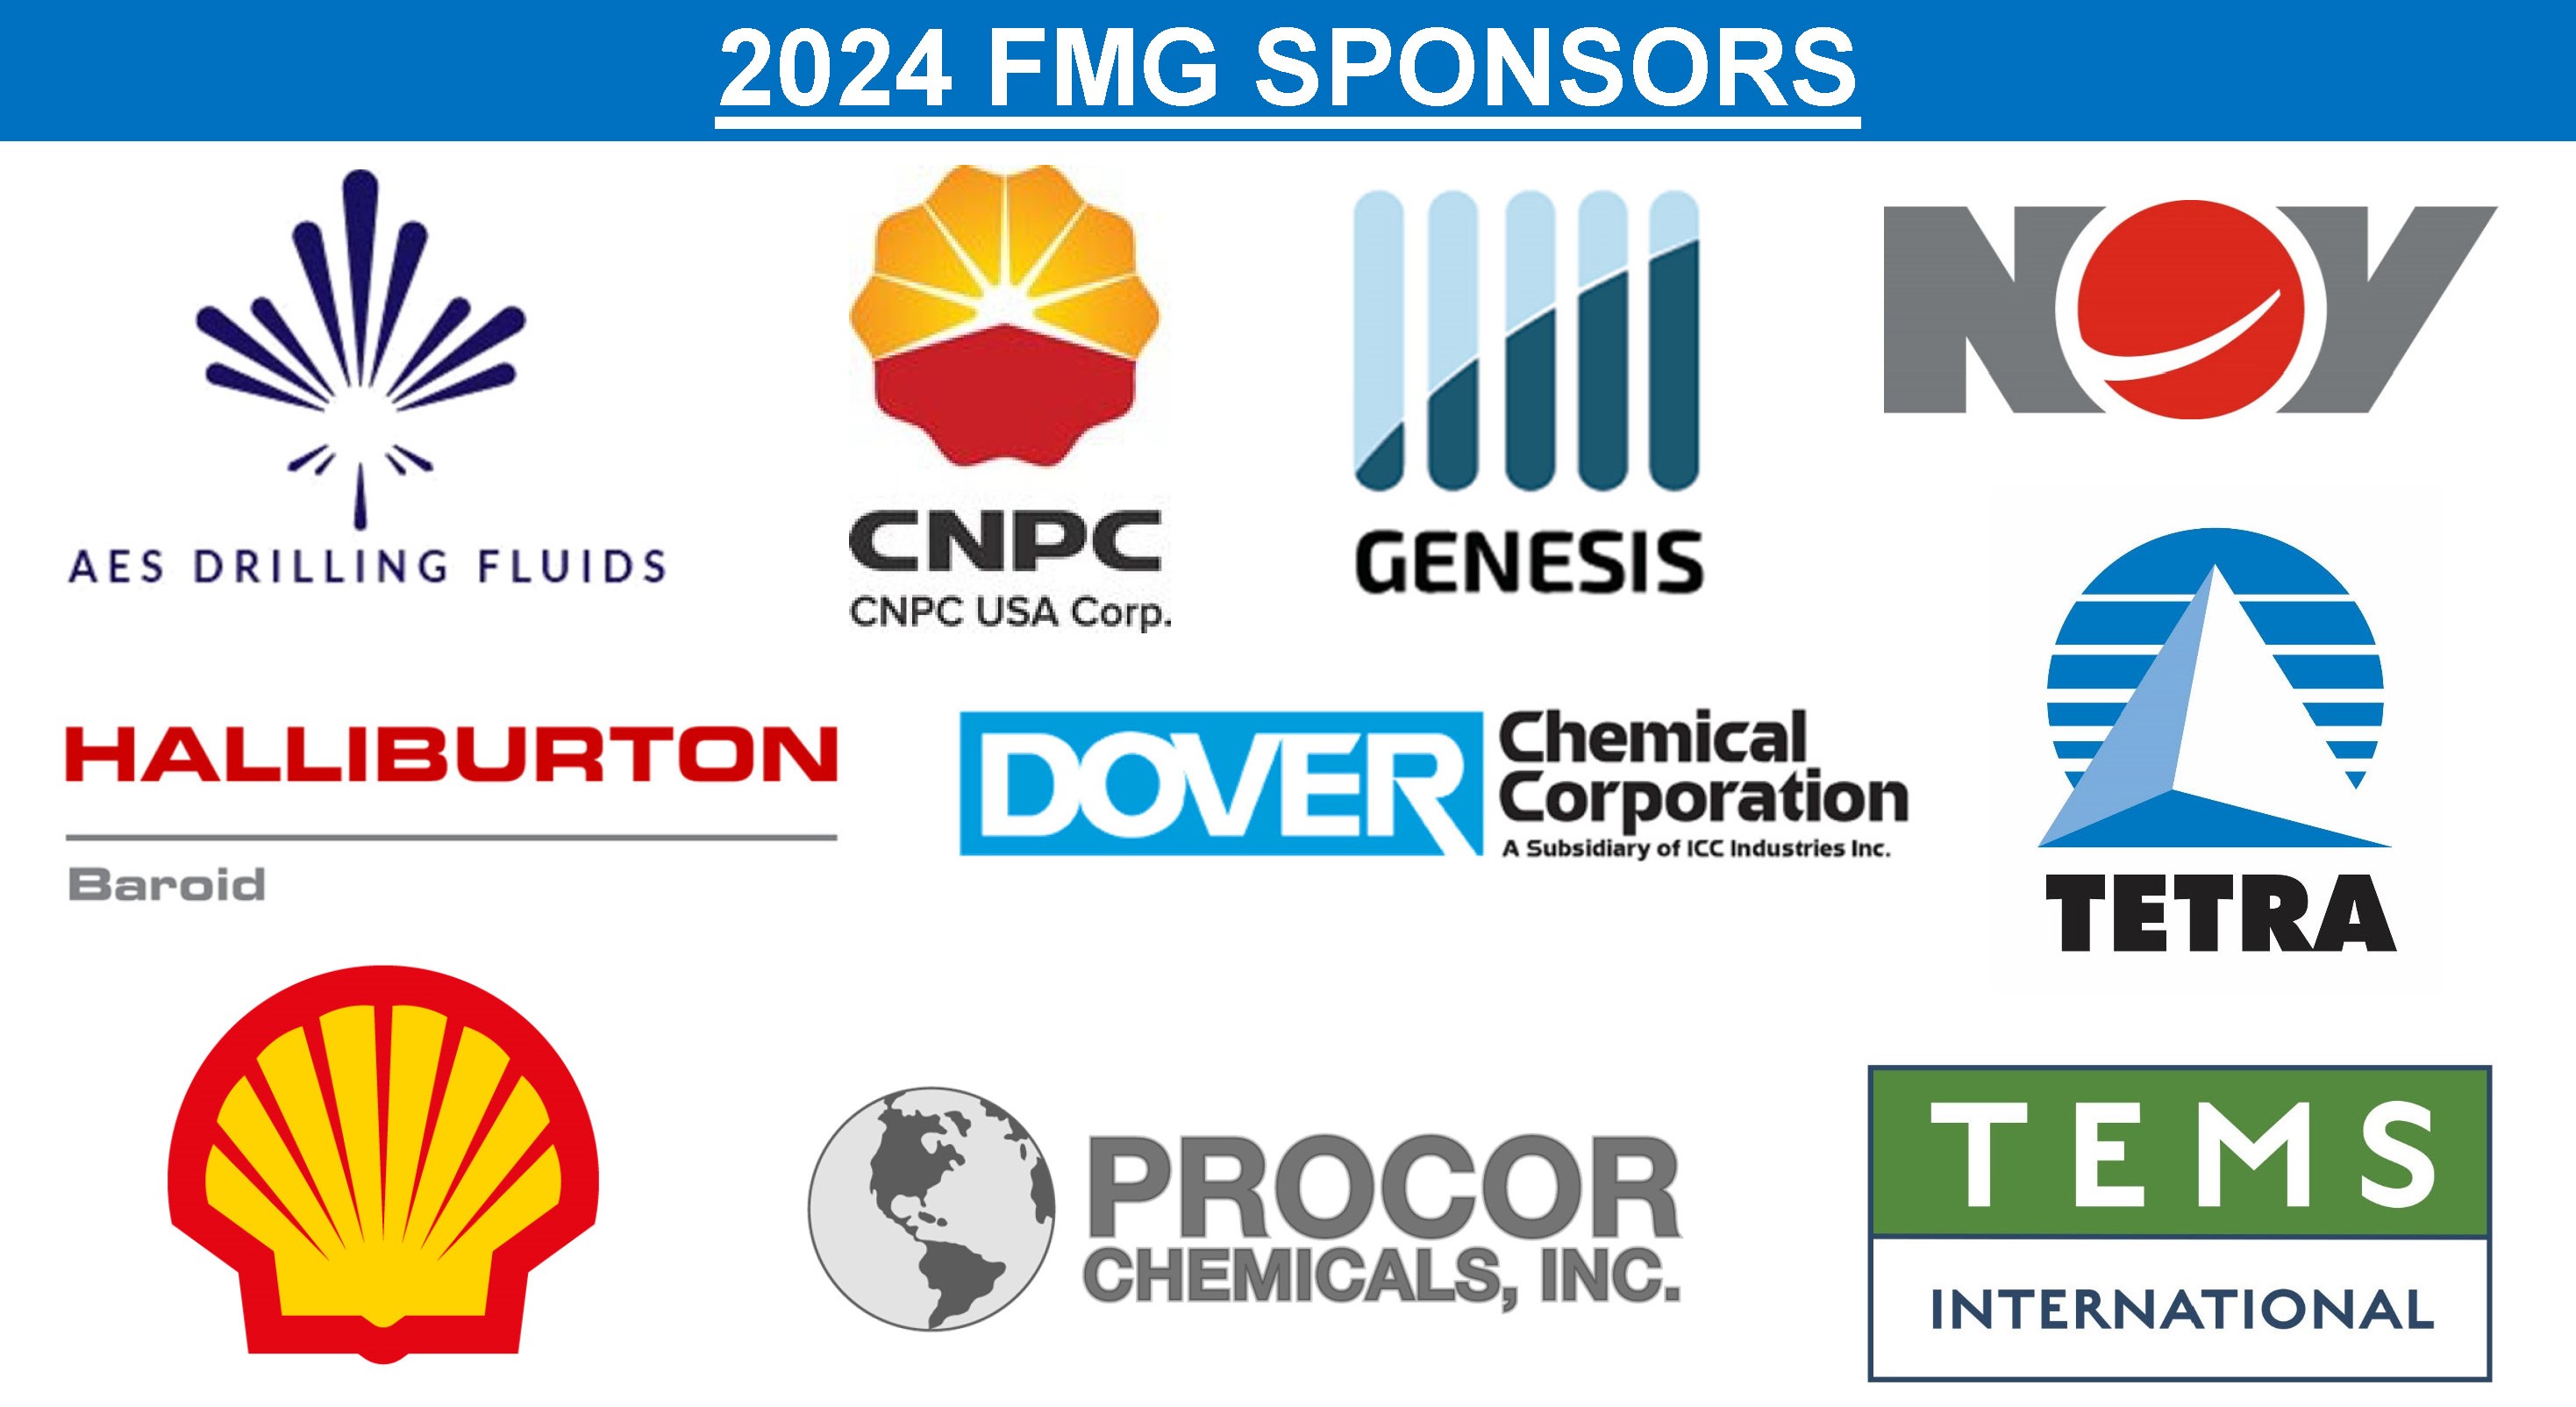 2024 FMG Sponsors 3-6-24.jpg